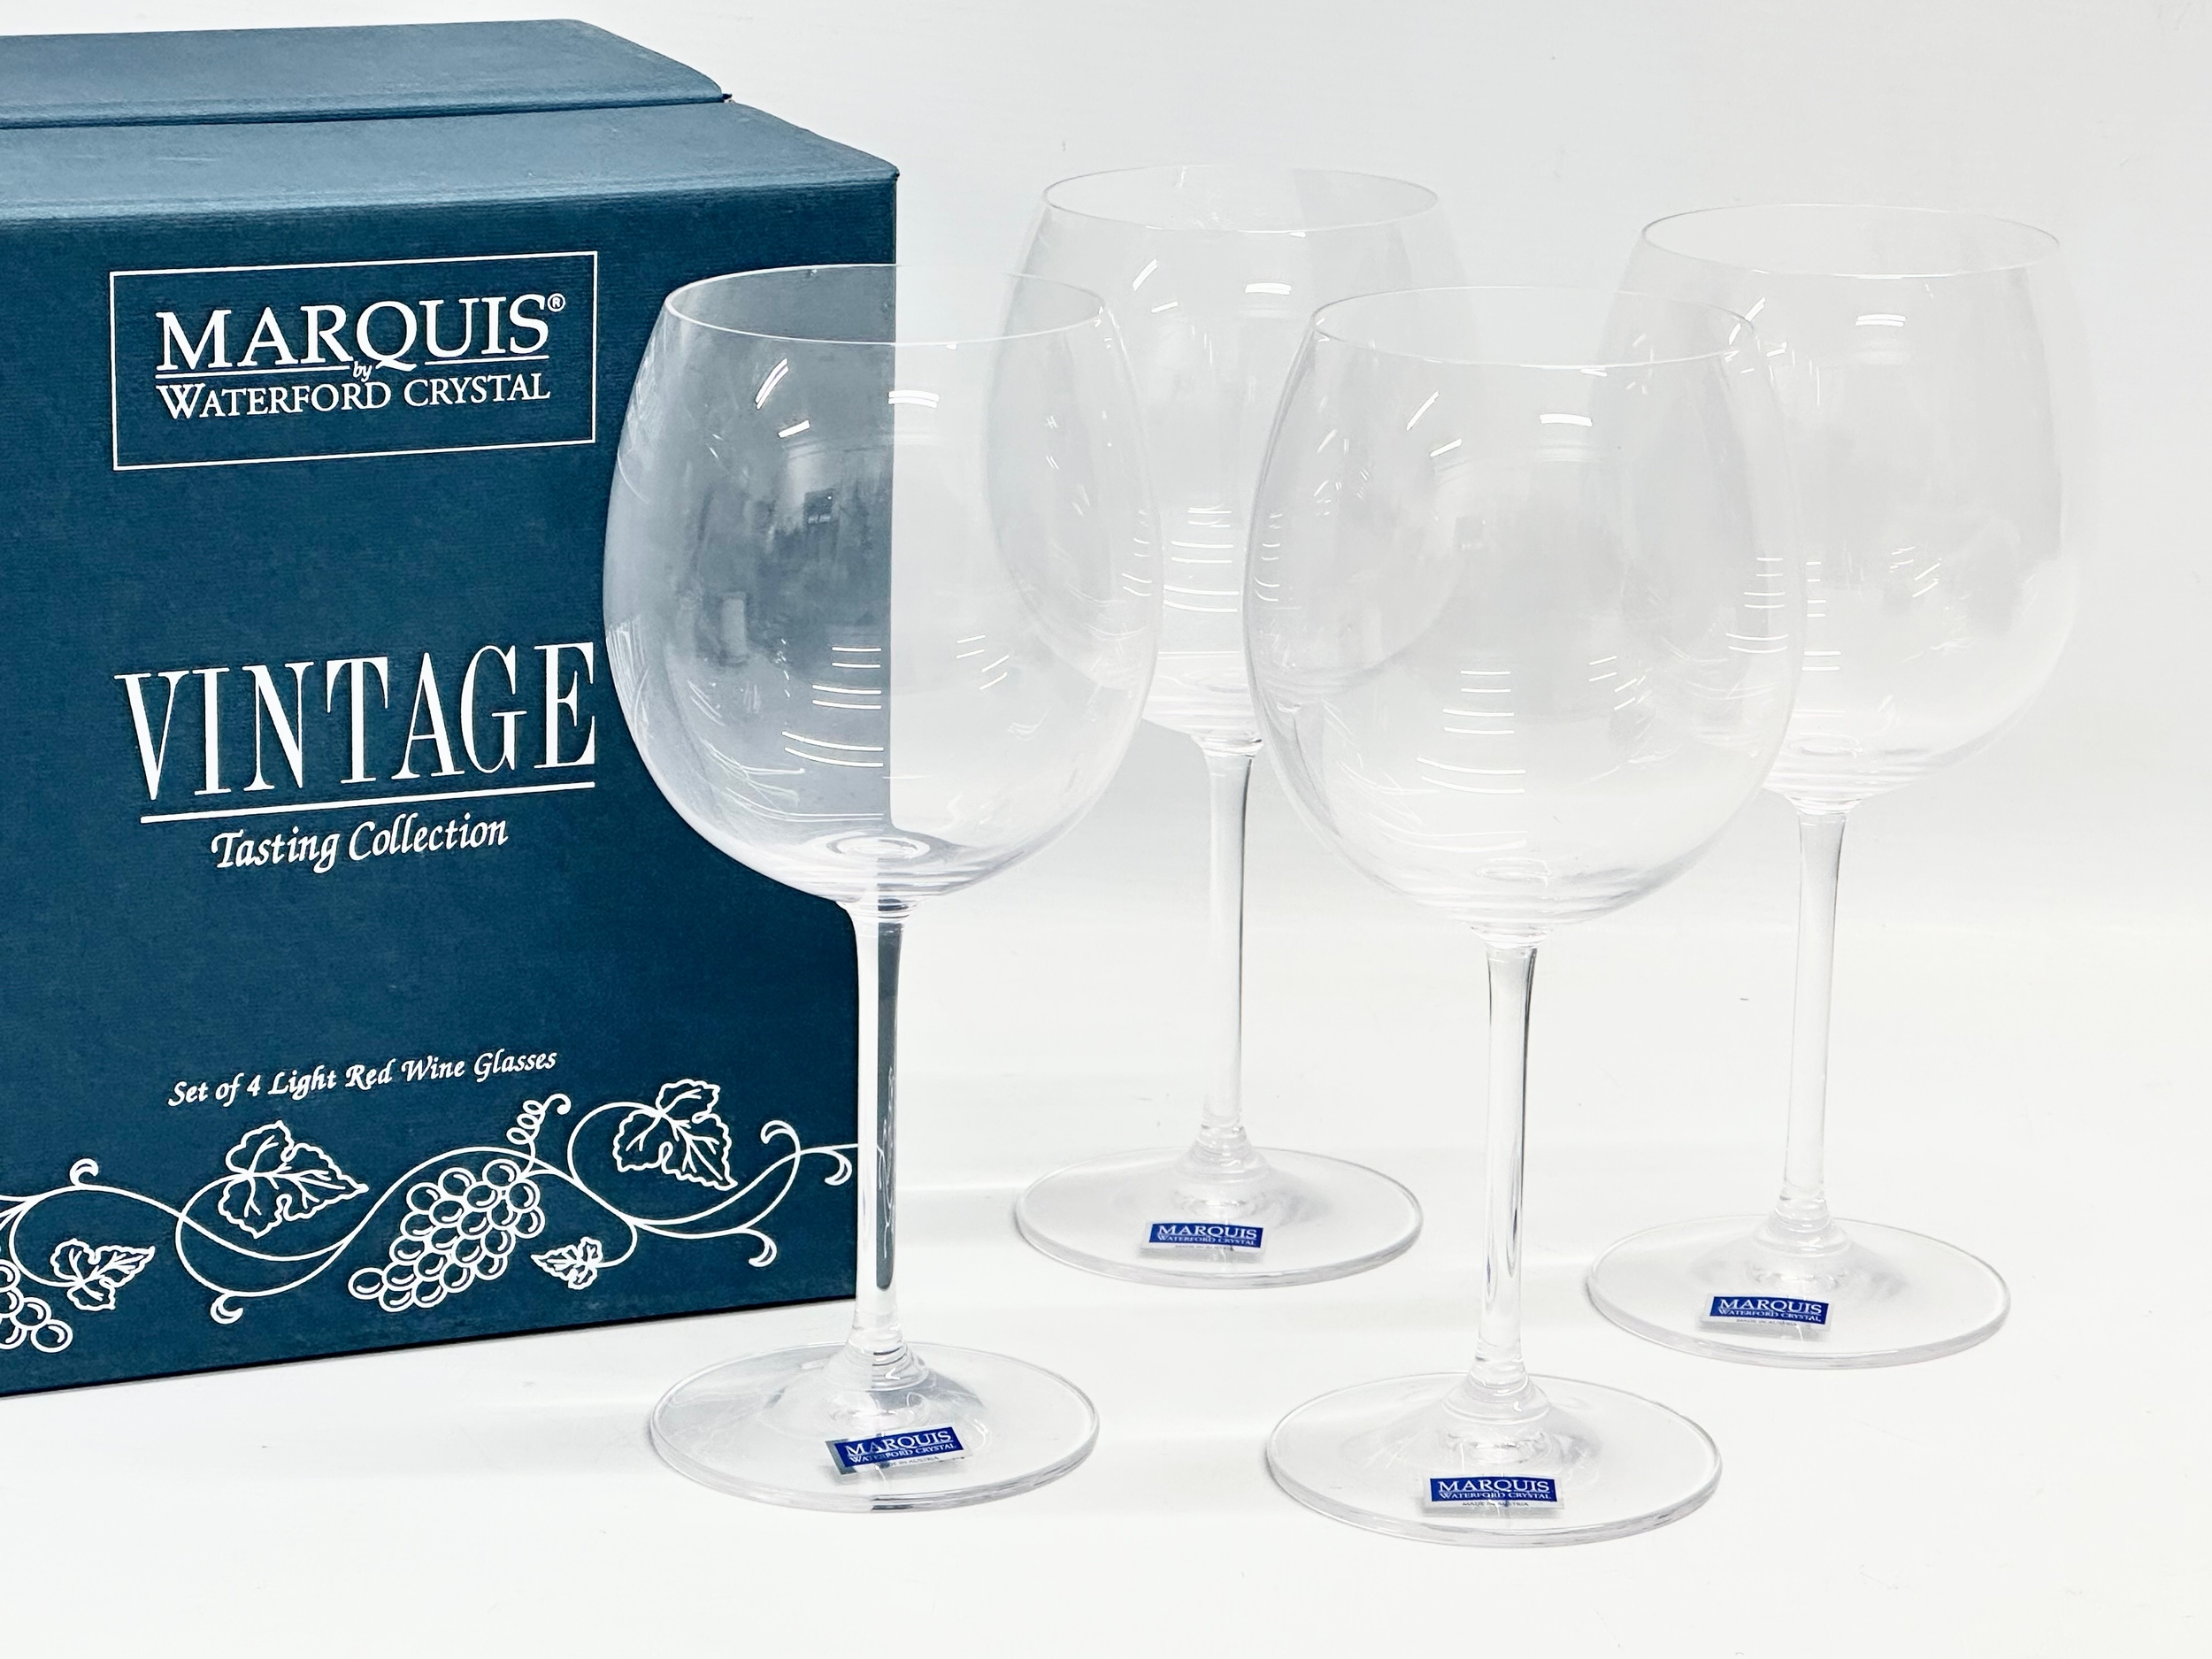 Waterford Marquis. The ‘Vintage Tasting Collection’ wine glasses by Waterford Marquis. Glasses